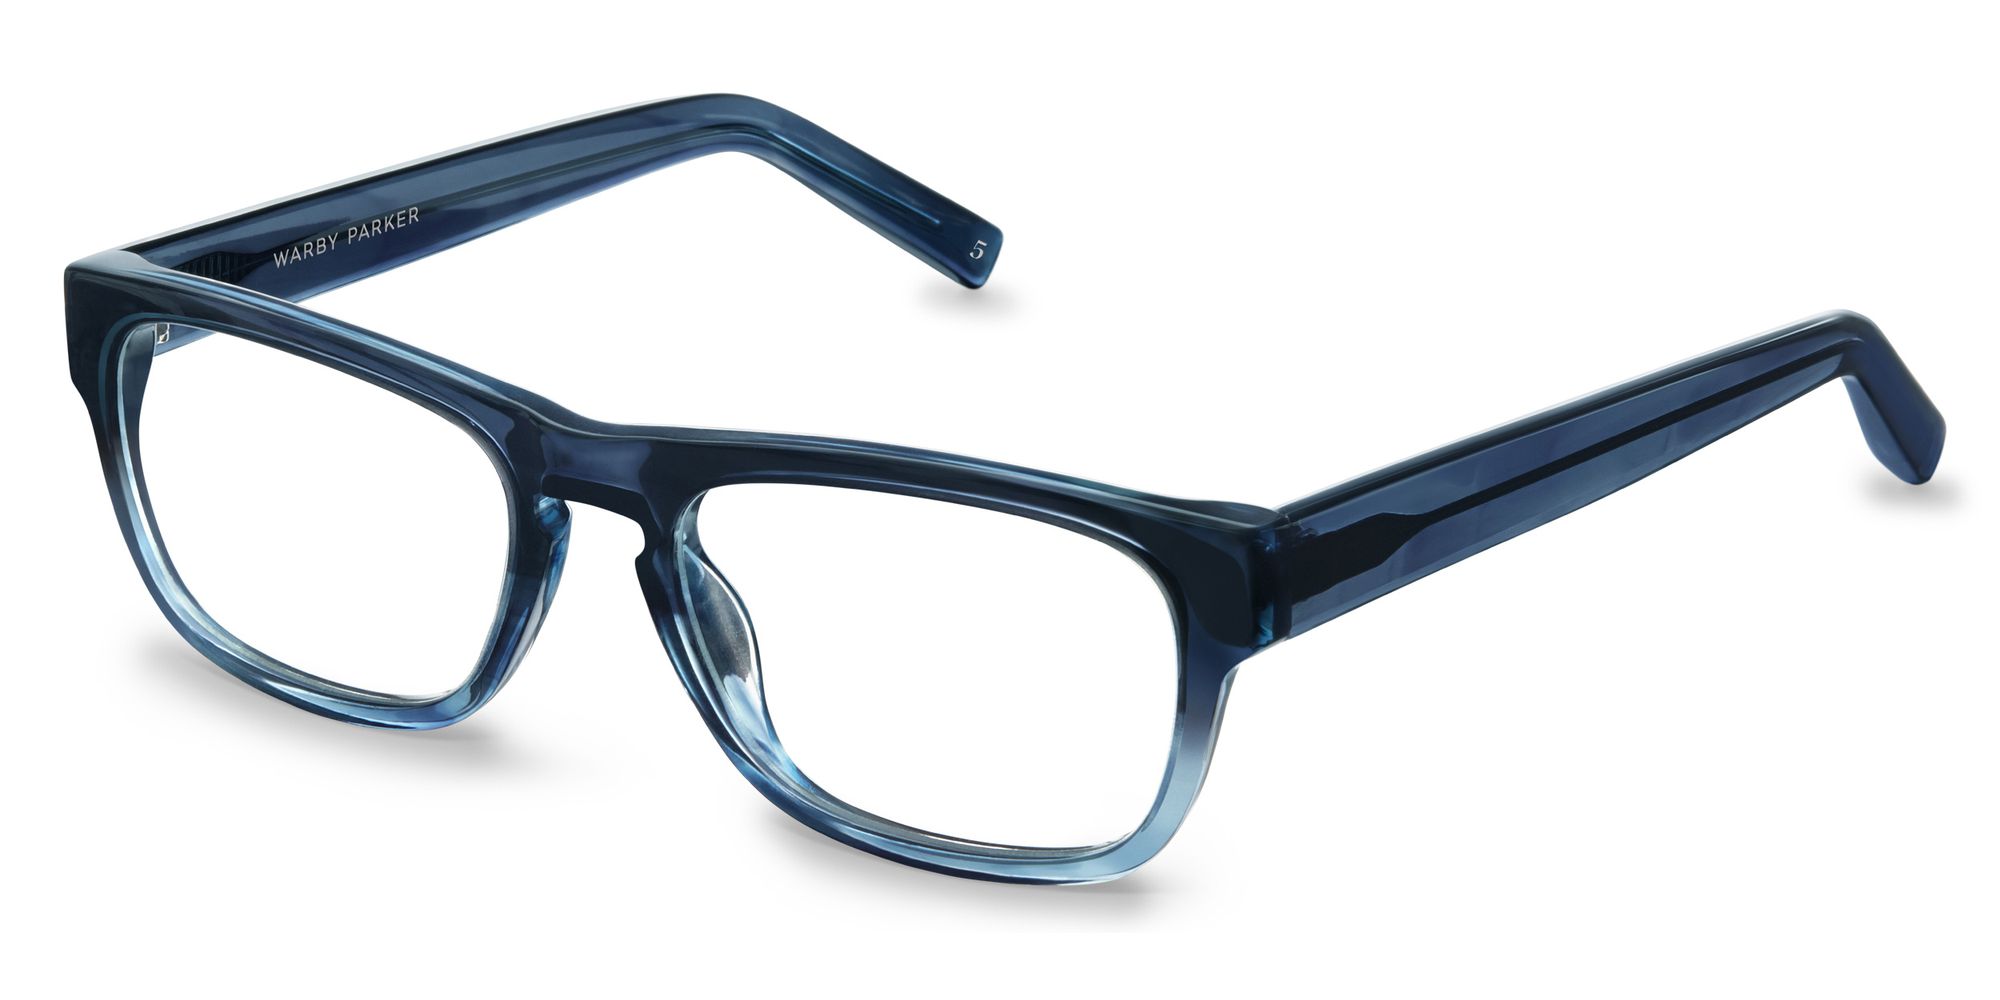 Similareyeglasses Com Warby Parker Roosevelt Eyeglasses In Blue Slate Fade For Men